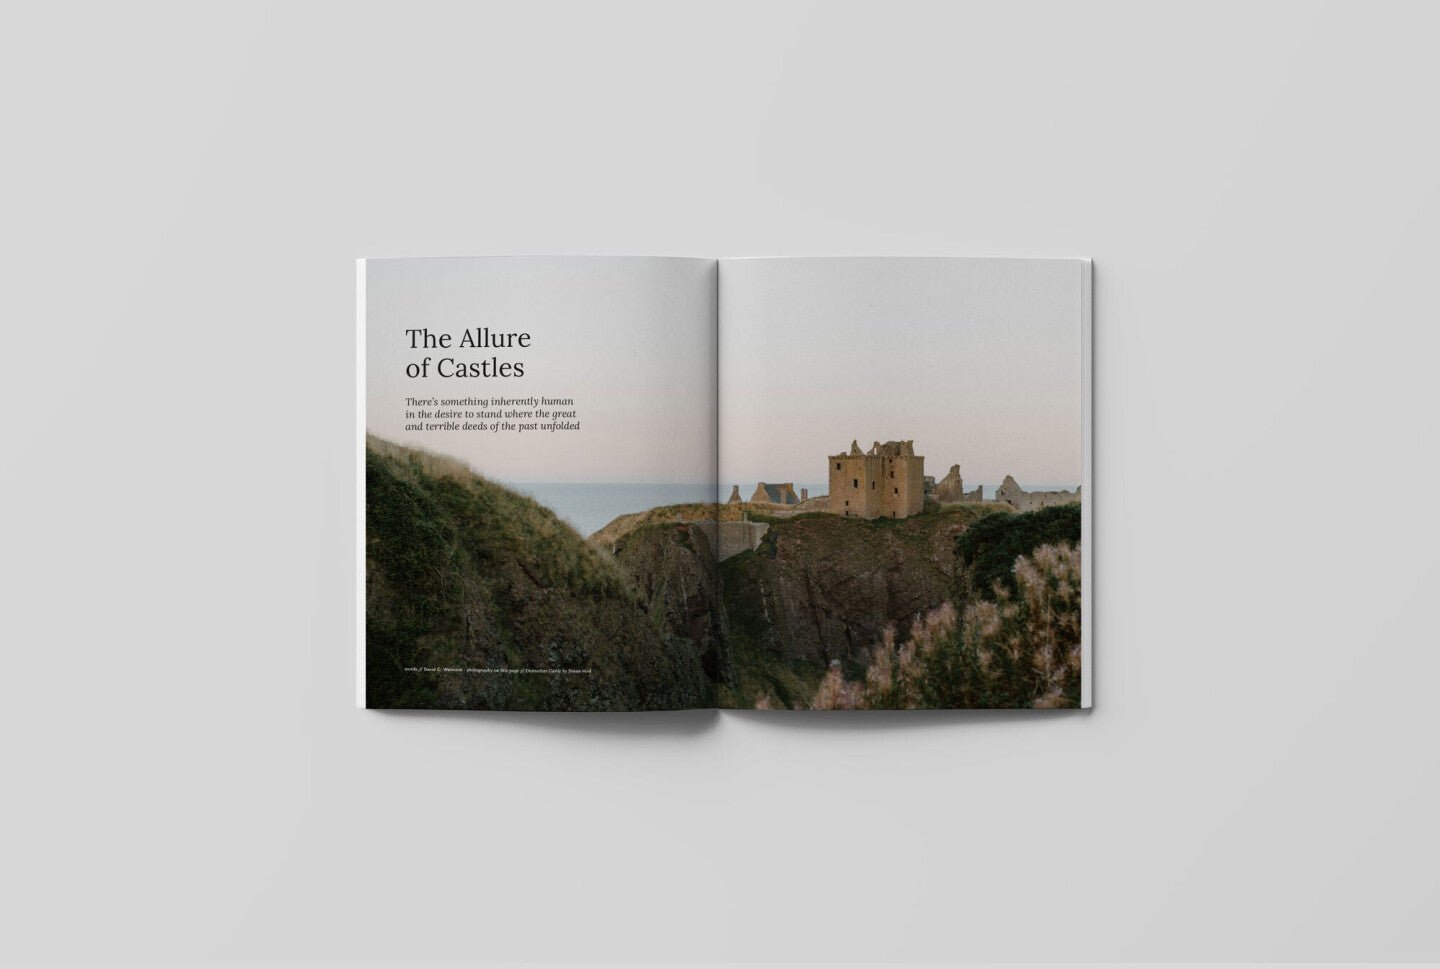 Hidden Scotland Magazine Issue 04 - Hidden Scotland